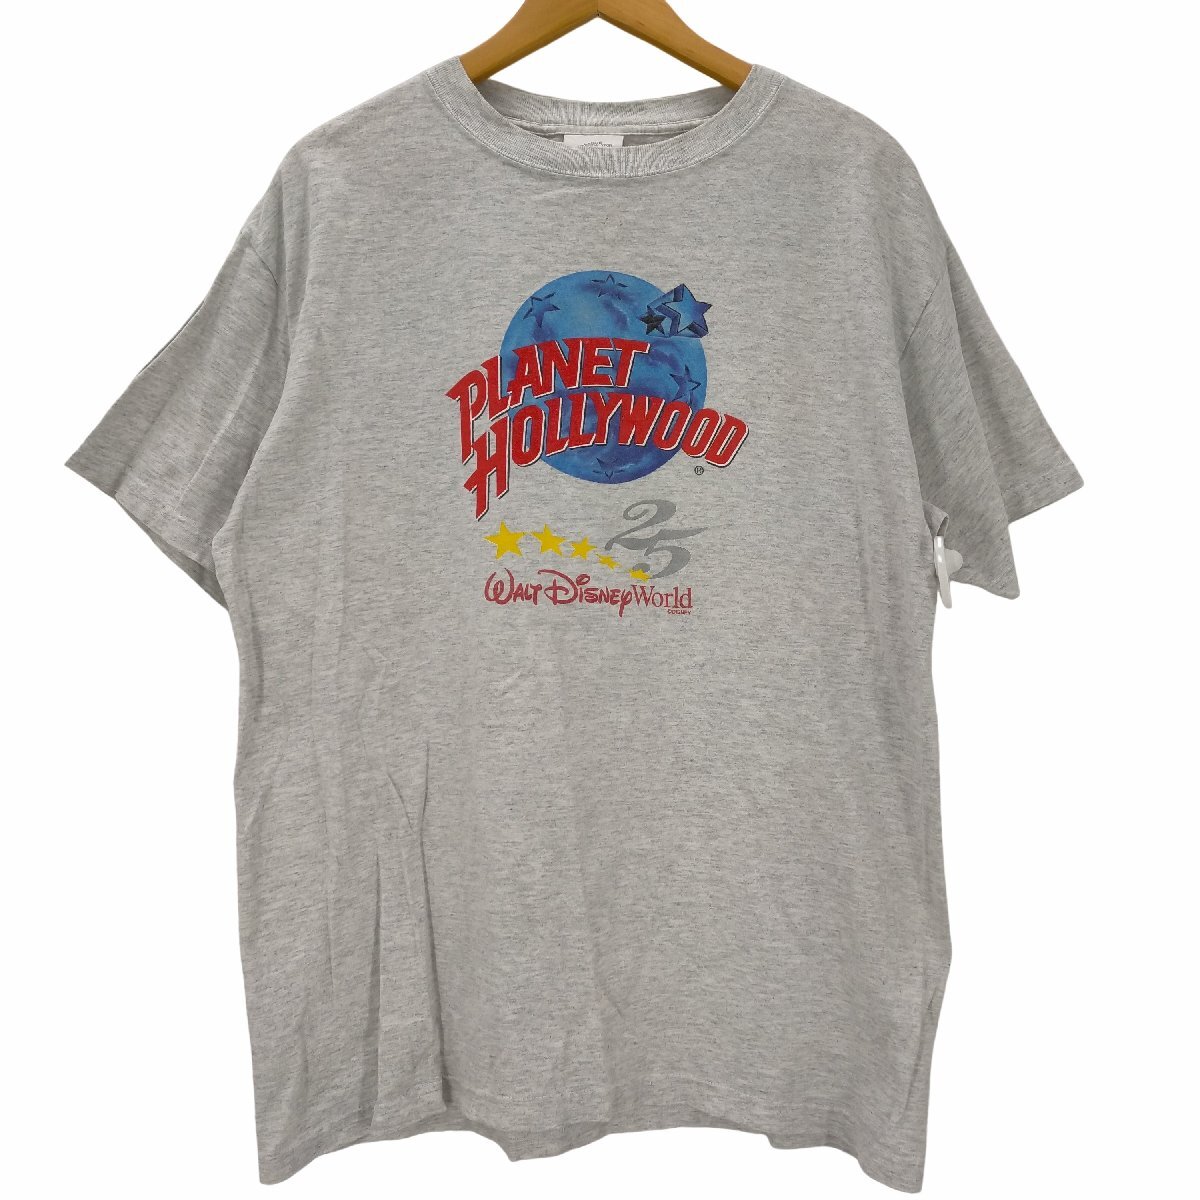 PLANET HOLLYWOOD(プラネットハリウッド) USA製 ロゴ大判プリント Tシャツ メンズ i 中古 古着 0256_画像1